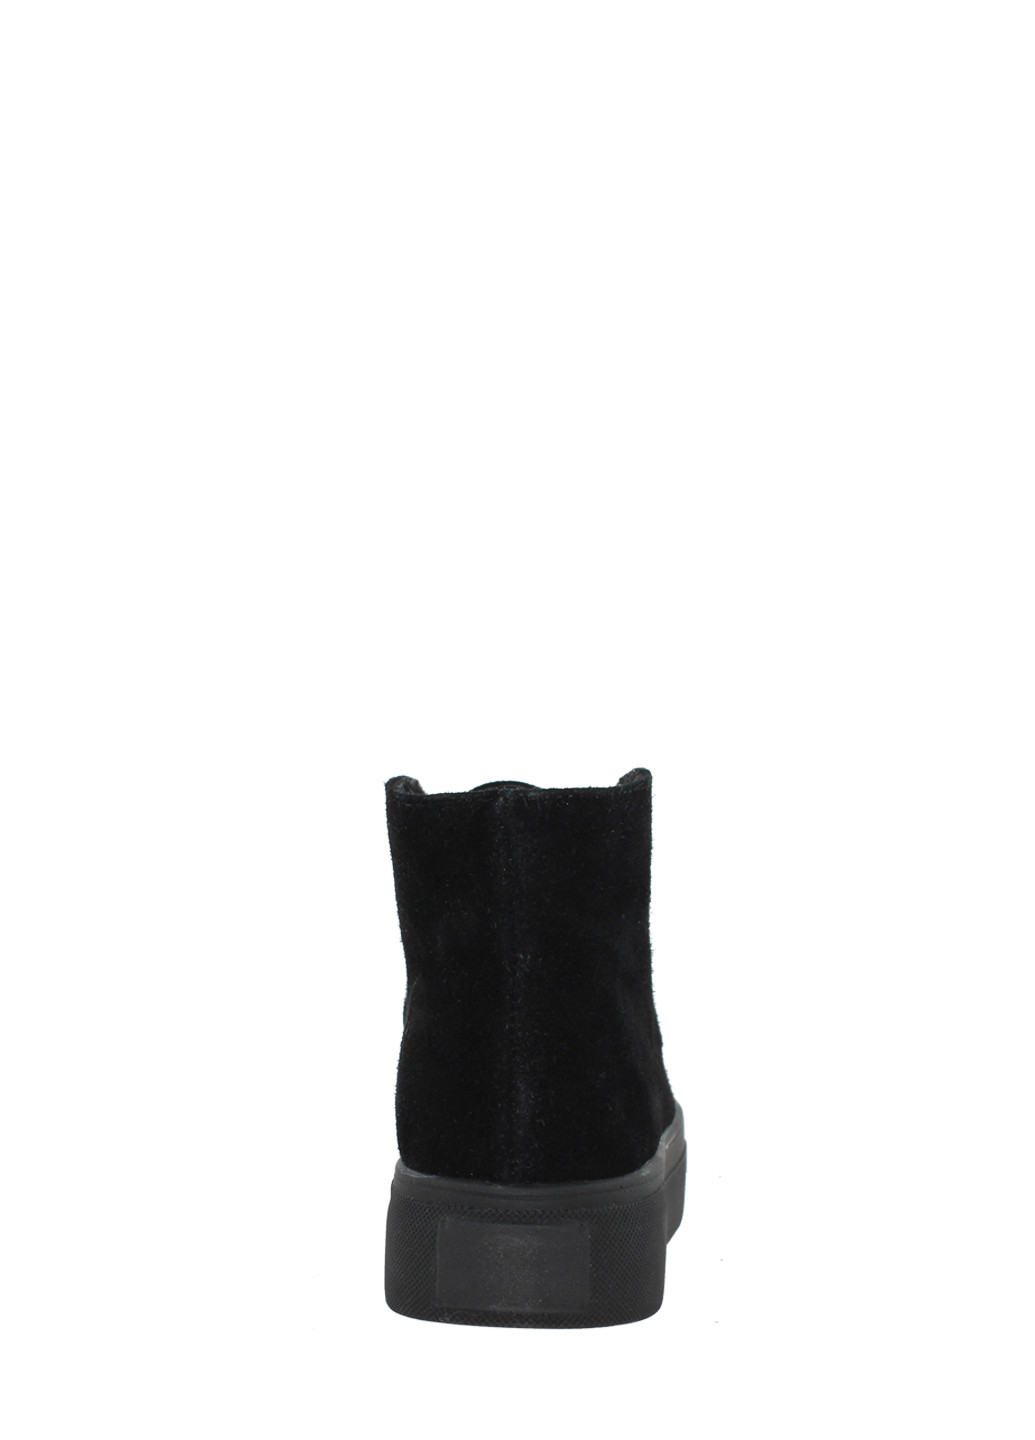 Осенние ботинки biz20-00150 черный Bizoni из натуральной замши